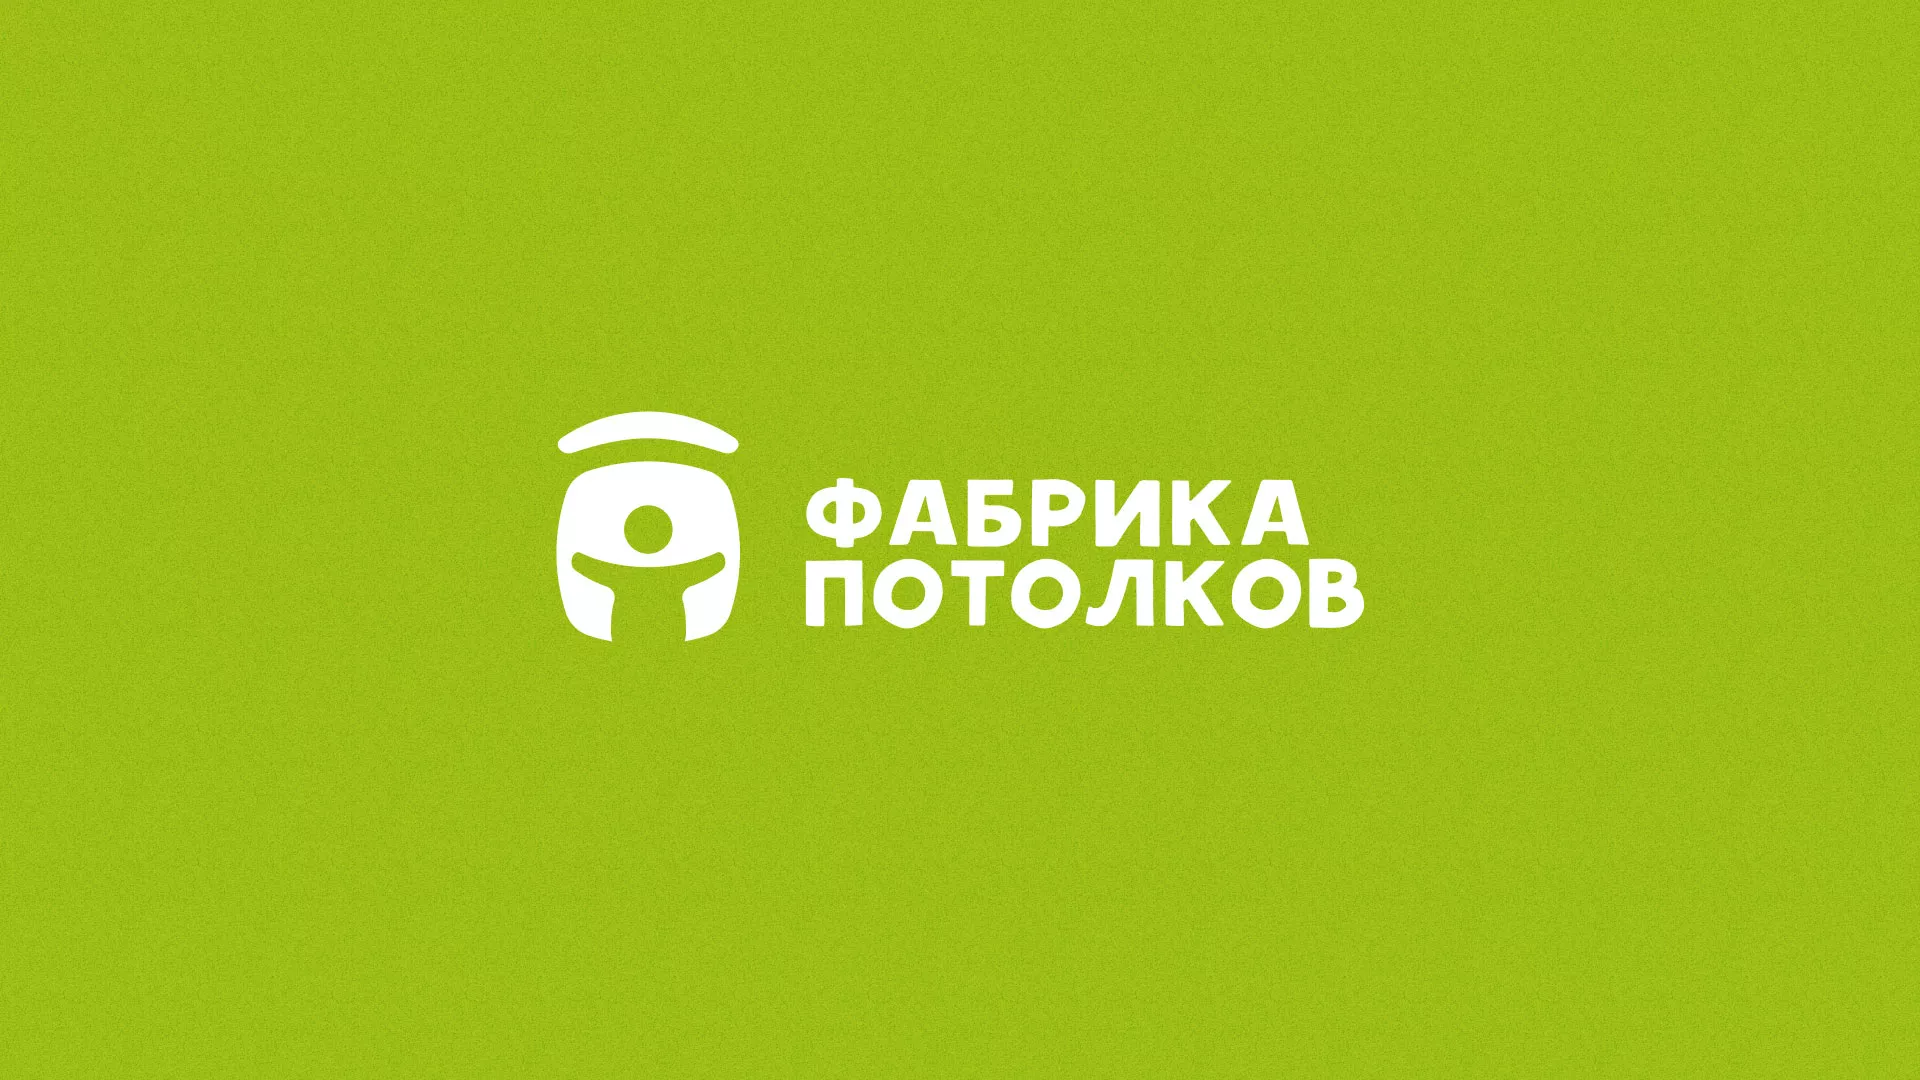 Разработка логотипа для производства натяжных потолков в Алексеевке